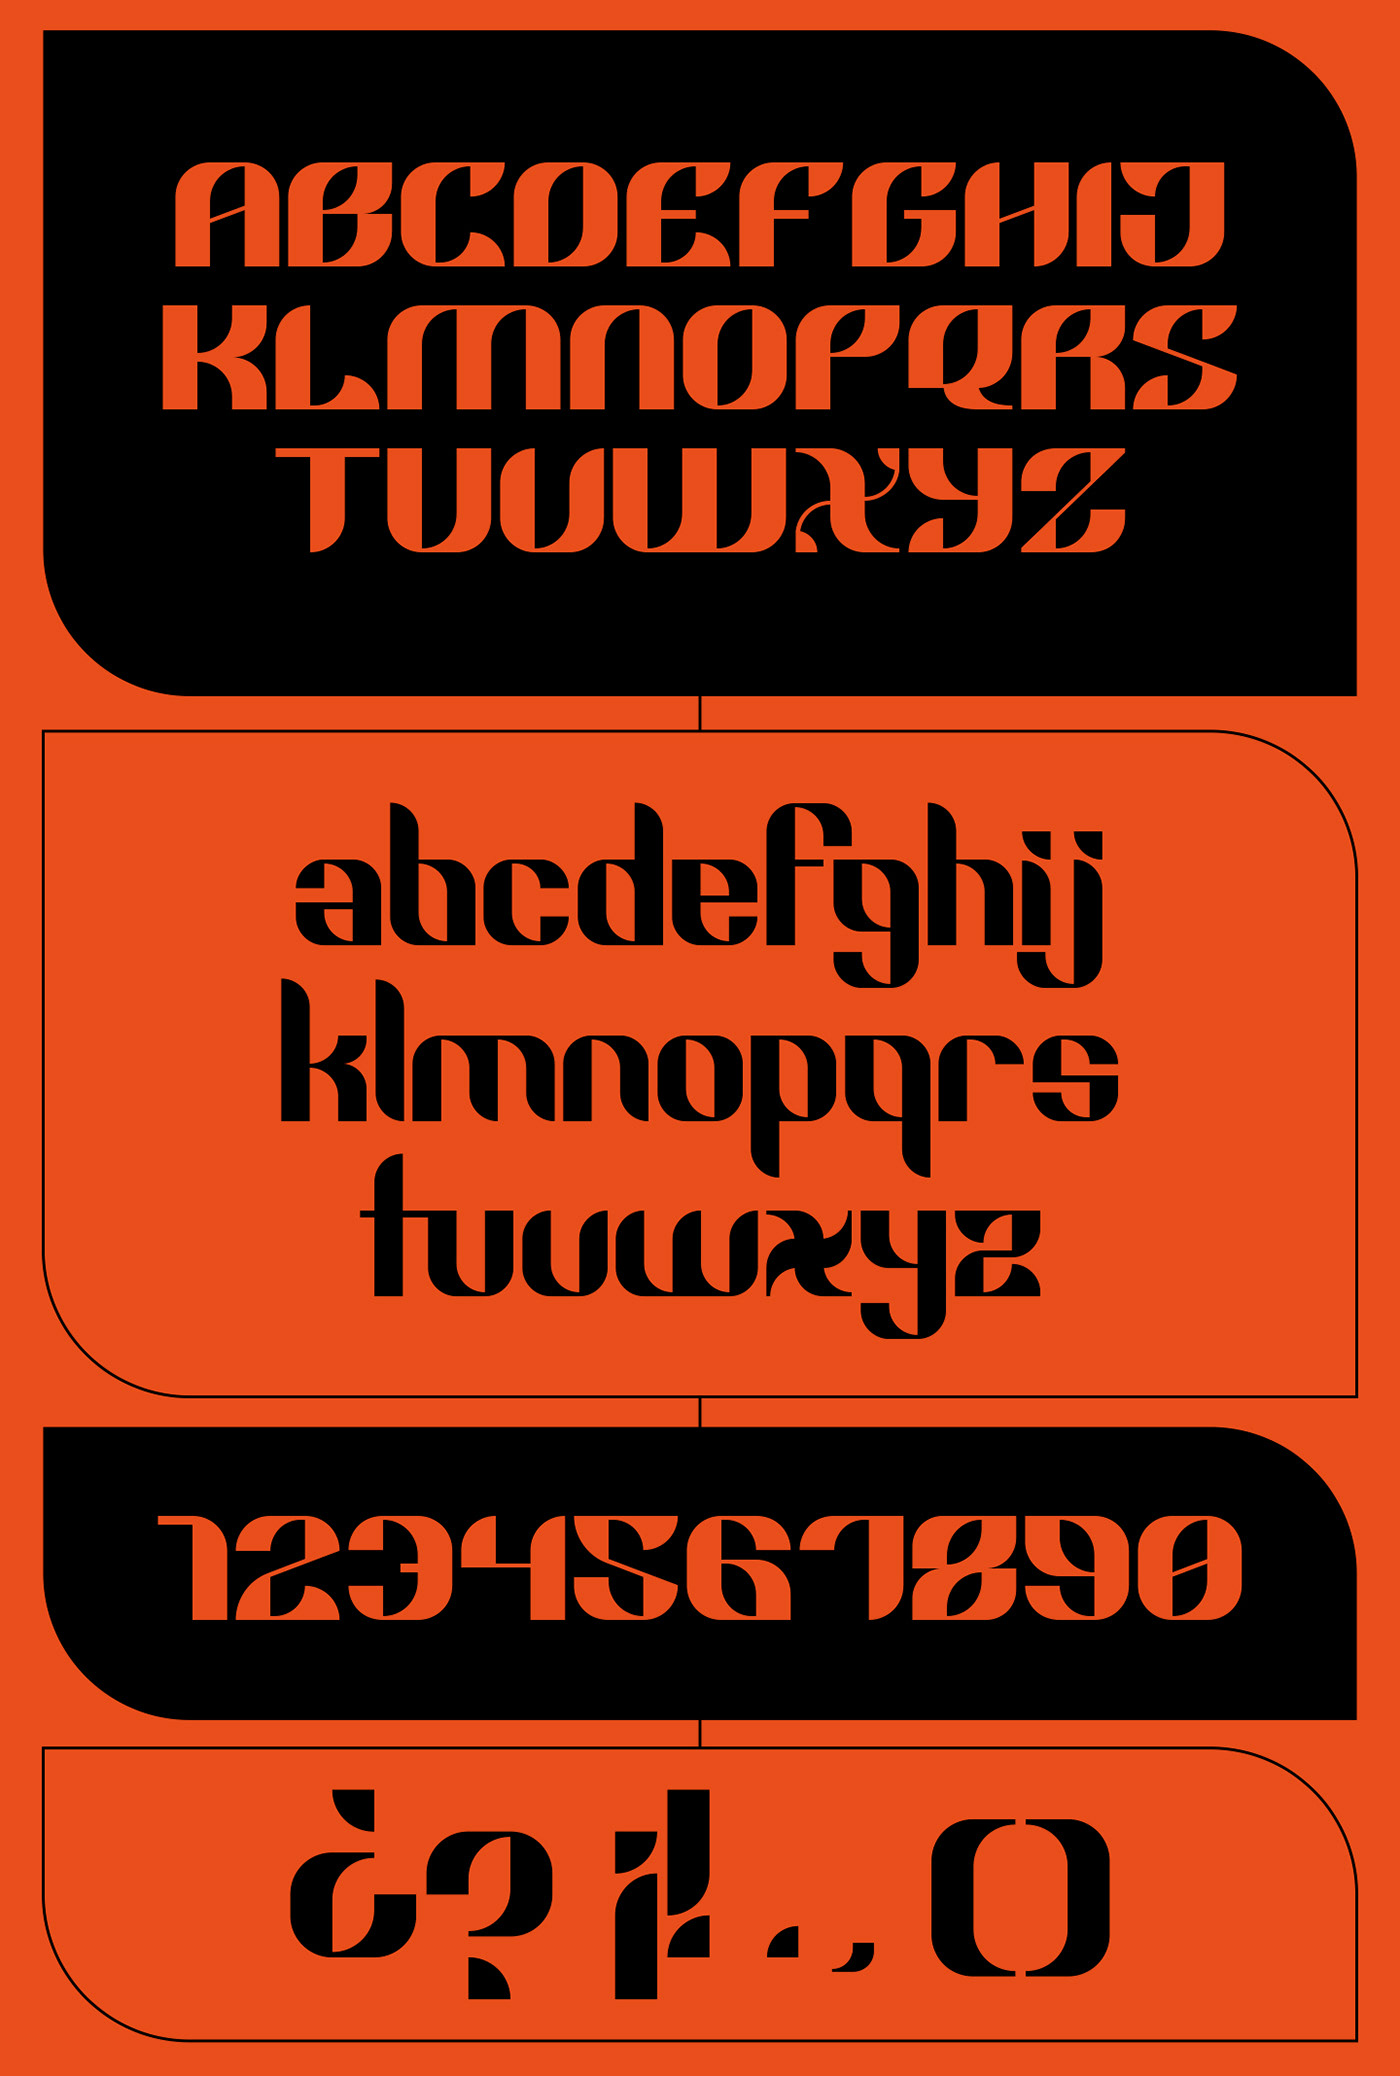 Display espada font fuente katana modular Sword tipografia type Typeface